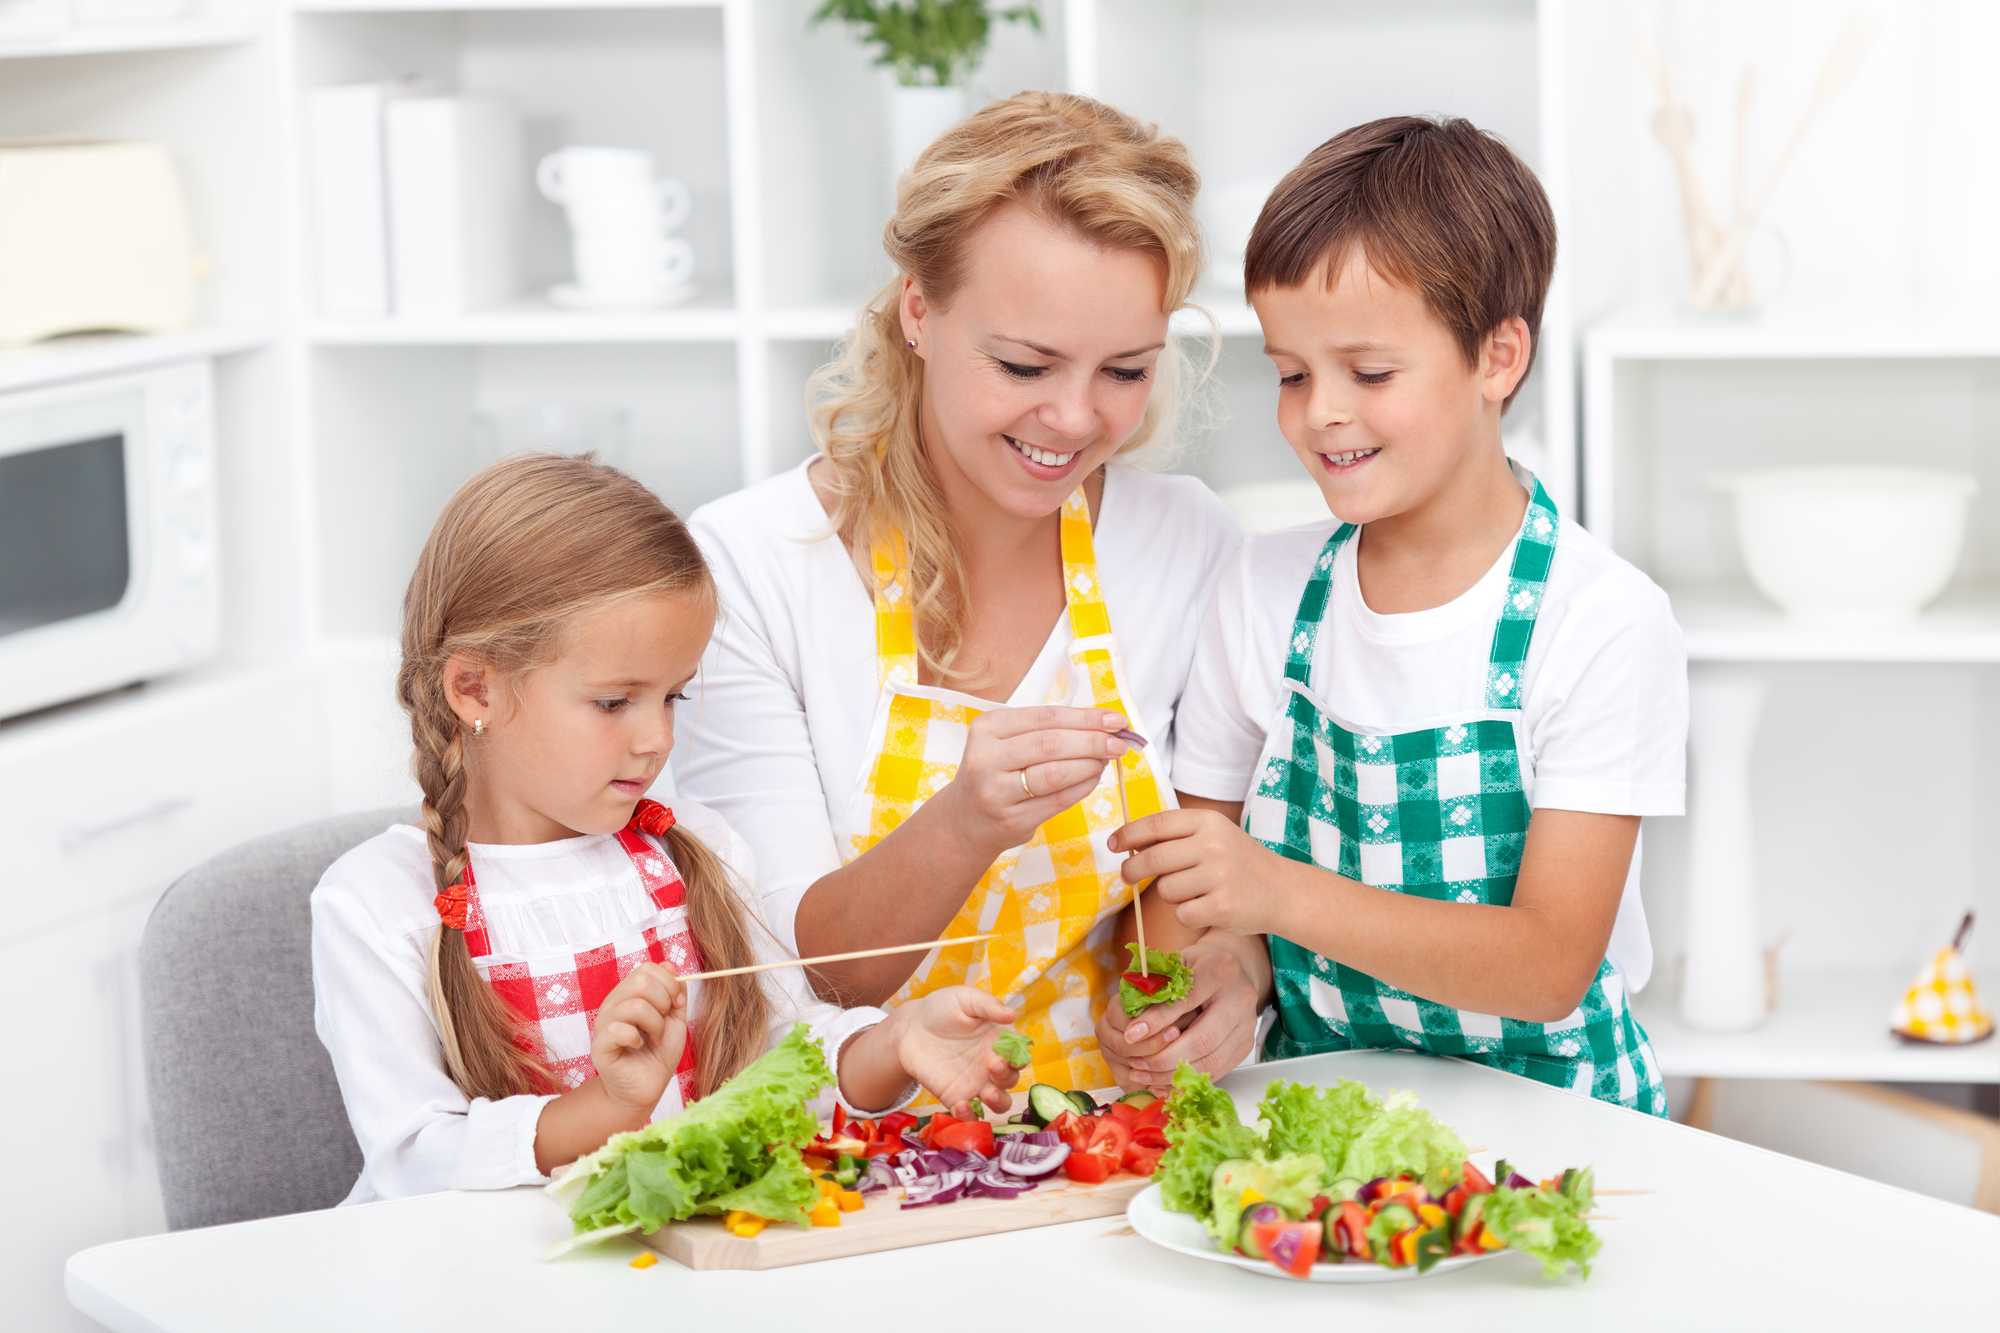 Ужин для мамы. Здоровое питание для детей. Обед для детей. Здоровое питание в семье. Семья на кухне.